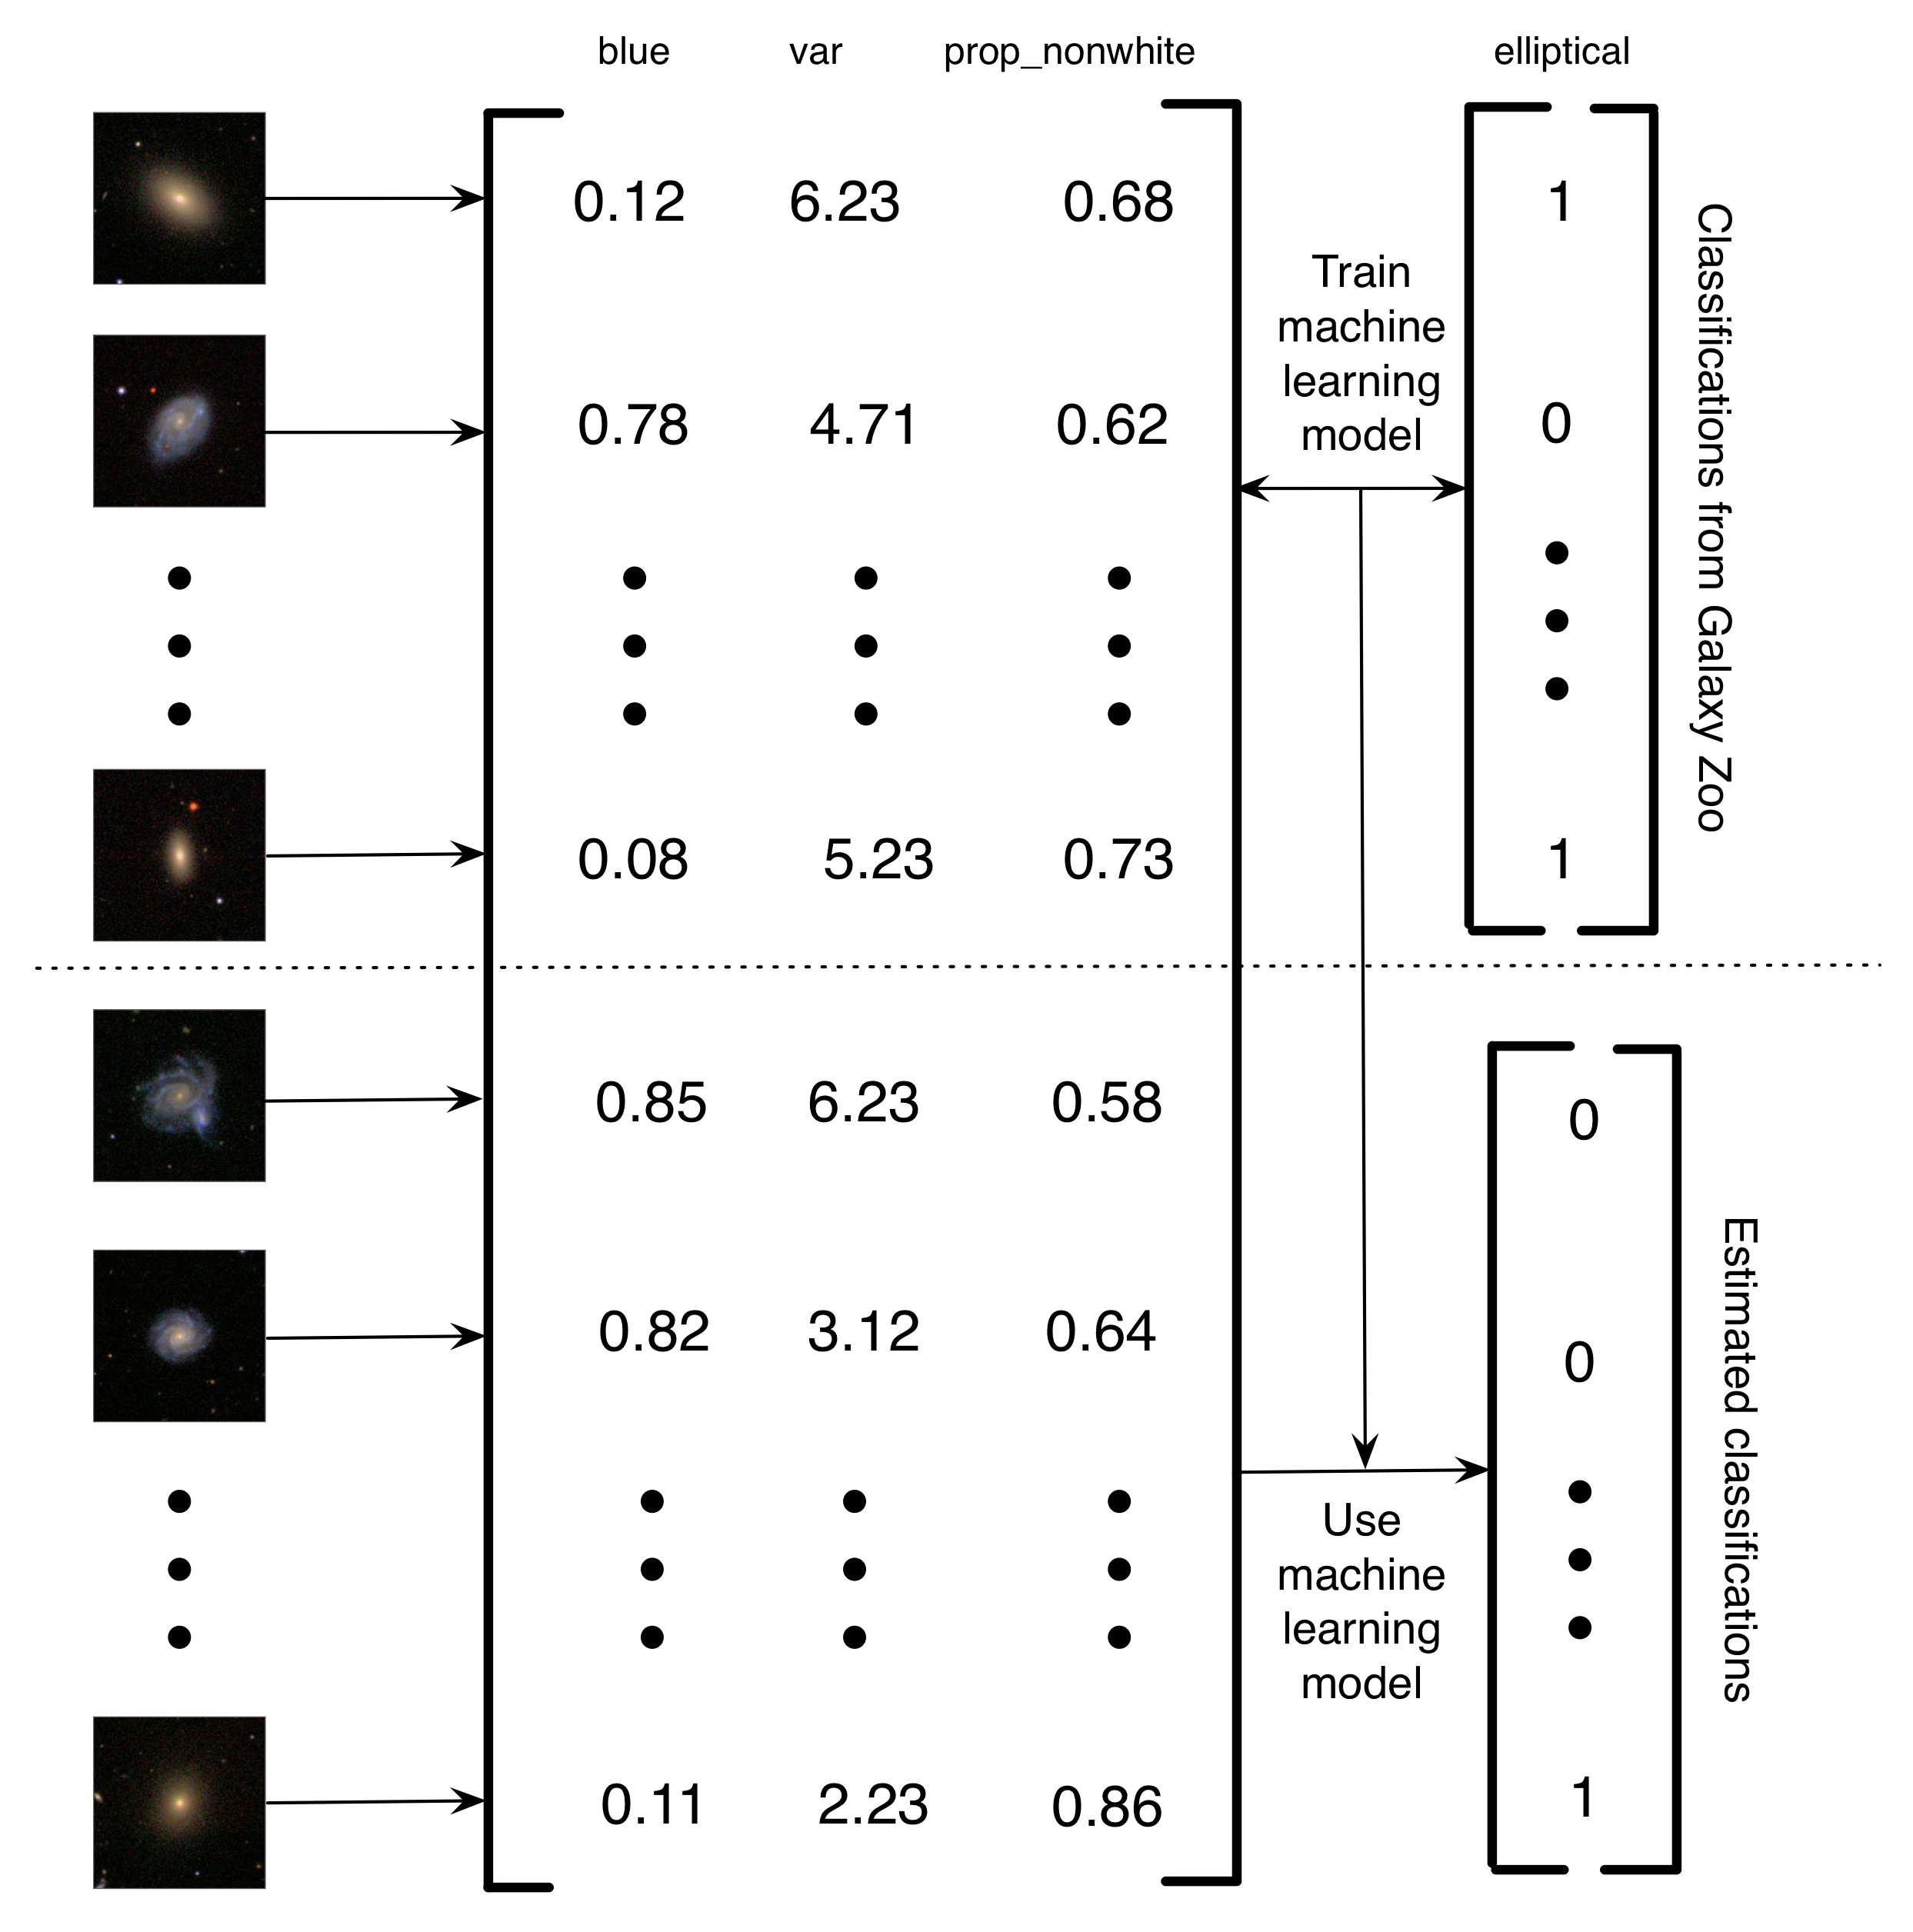 Figura 5.4: Descrierea simplificată a modului în care Banerji et al. (2010) a folosit clasificările Galaxy Zoo pentru a pregăti un model de învățare a mașinilor pentru a face clasificarea galaxiilor. Imaginile galaxiilor au fost transformate într-o matrice de trăsături. În acest exemplu simplificat, există trei caracteristici (cantitatea de albastru din imagine, varianța de luminozitate a pixelilor și proporția de pixeli nepieritori). Apoi, pentru un subset de imagini, etichetele Galaxy Zoo sunt folosite pentru a pregăti un model de învățare în mașină. În cele din urmă, învățarea mașinilor este utilizată pentru estimarea clasificărilor pentru restul galaxiilor. Eu numesc acest proiect de calcul uman asistat de calculator, deoarece, mai degrabă decât dacă oamenii au rezolvat o problemă, oamenii au construit un set de date care poate fi folosit pentru a instrui un calculator pentru a rezolva problema. Avantajul acestui sistem de computerizare asistat de calculator este acela că vă permite să gestionați cantități infinite de date, utilizând doar o cantitate finită de efort uman. Imagini ale galaxiilor reproduse cu permisiunea Sloan Digital Sky Survey.